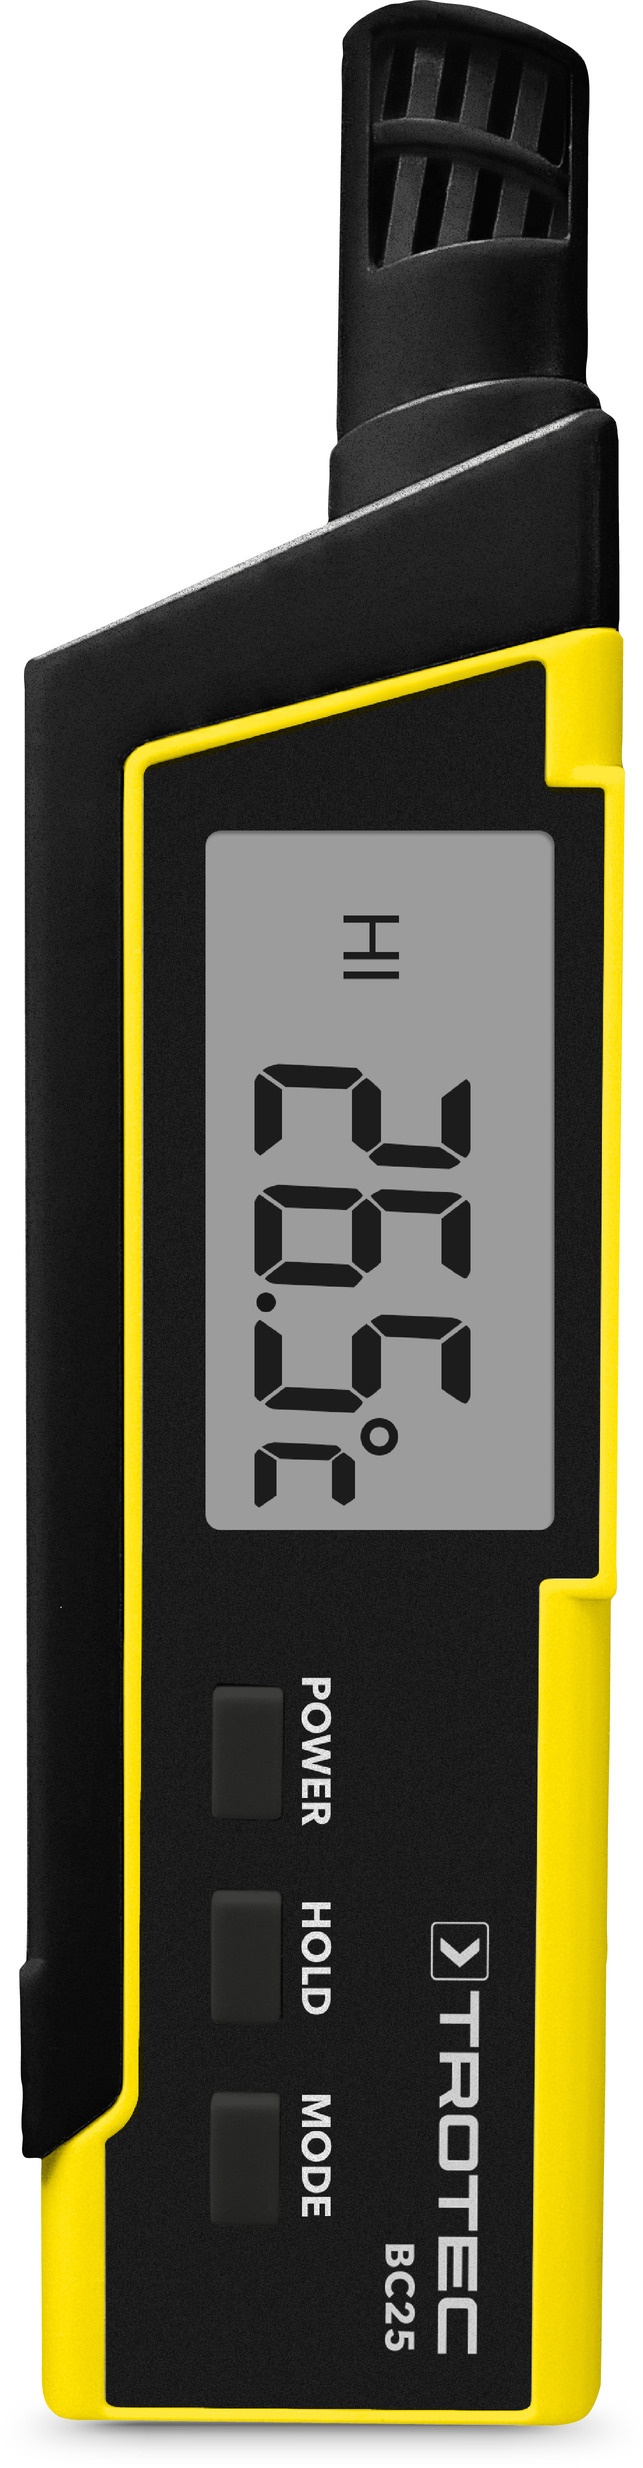 Trotec Thermo-hygromètre BC25 avec indice de chaleur (HI) et température ressentie (indice WBGT)